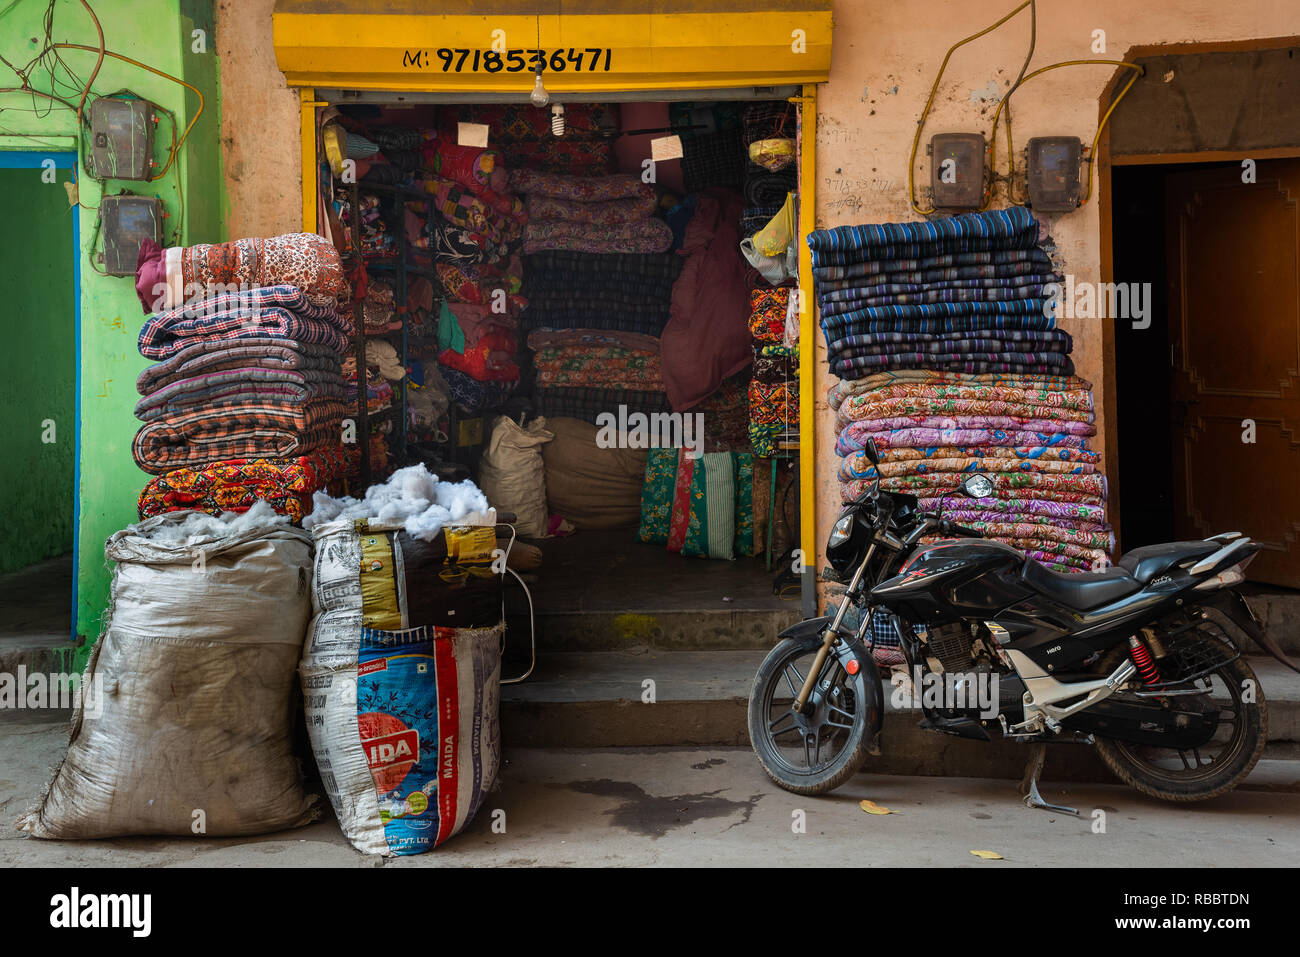 Diese Matratze Shop in Madanpur Khadar, New Delhi liefert herkömmliche Matratzen und Steppdecken zu khadar der Einwohner und der größeren Ortschaft. Stockfoto